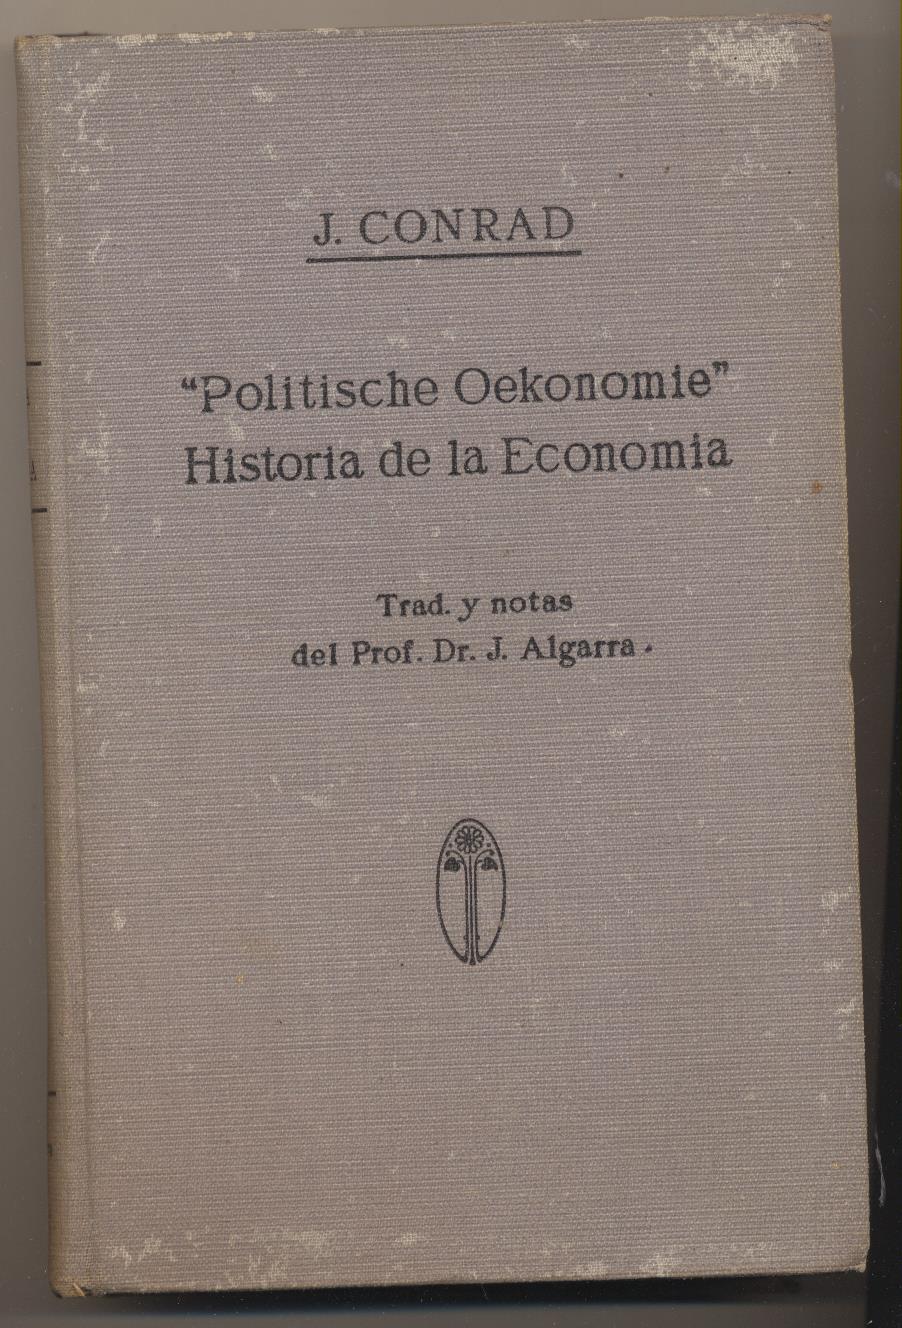 J. Conrad. Historia de la Economía. Año 1941